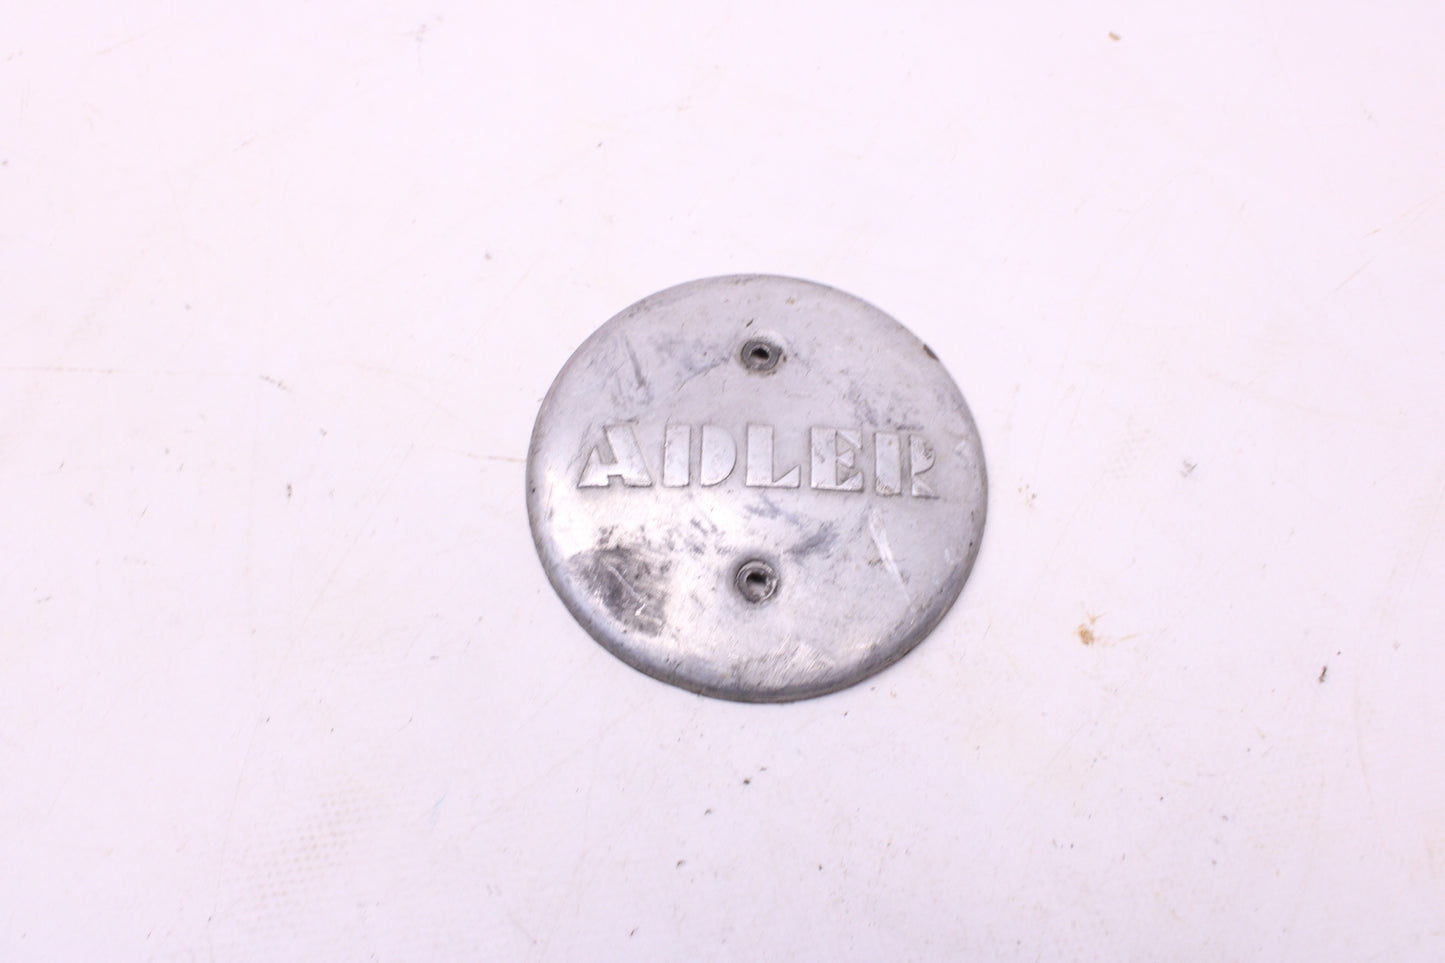 Adler M125 Bj. 1952 - Adler Emblem Motor Deckel